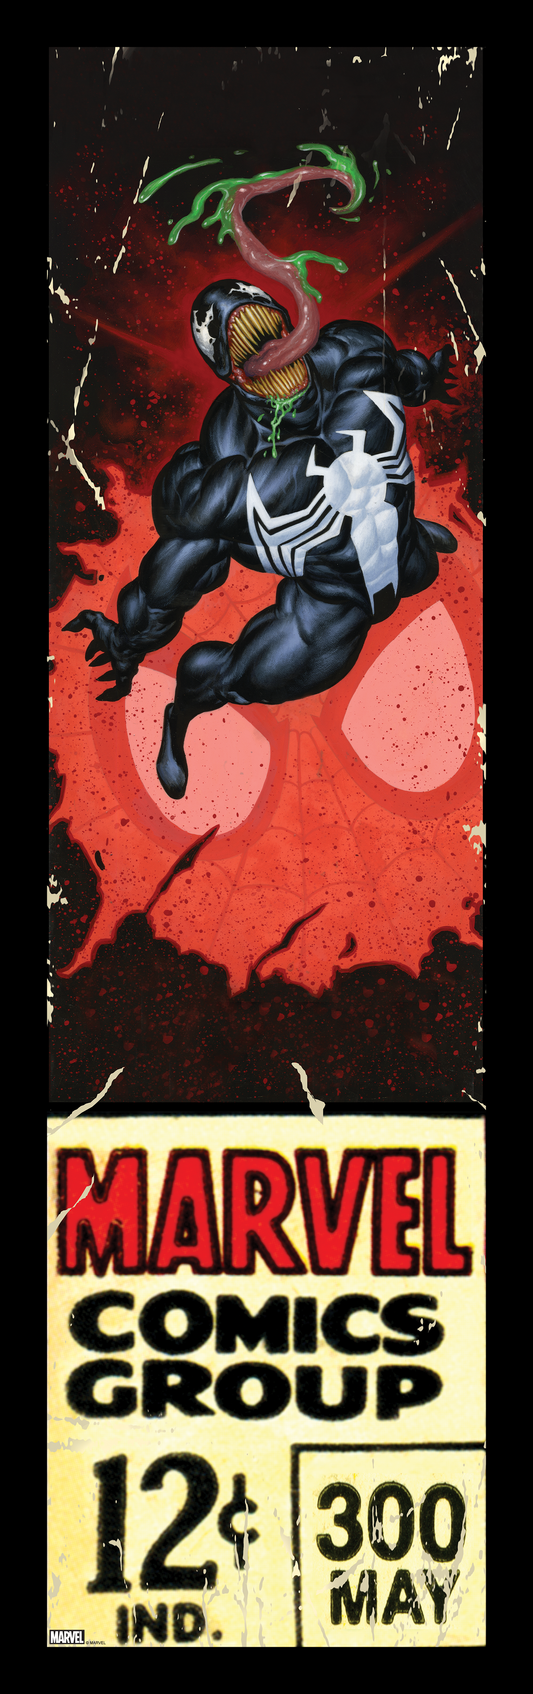 Joe Jusko "Venom #4"